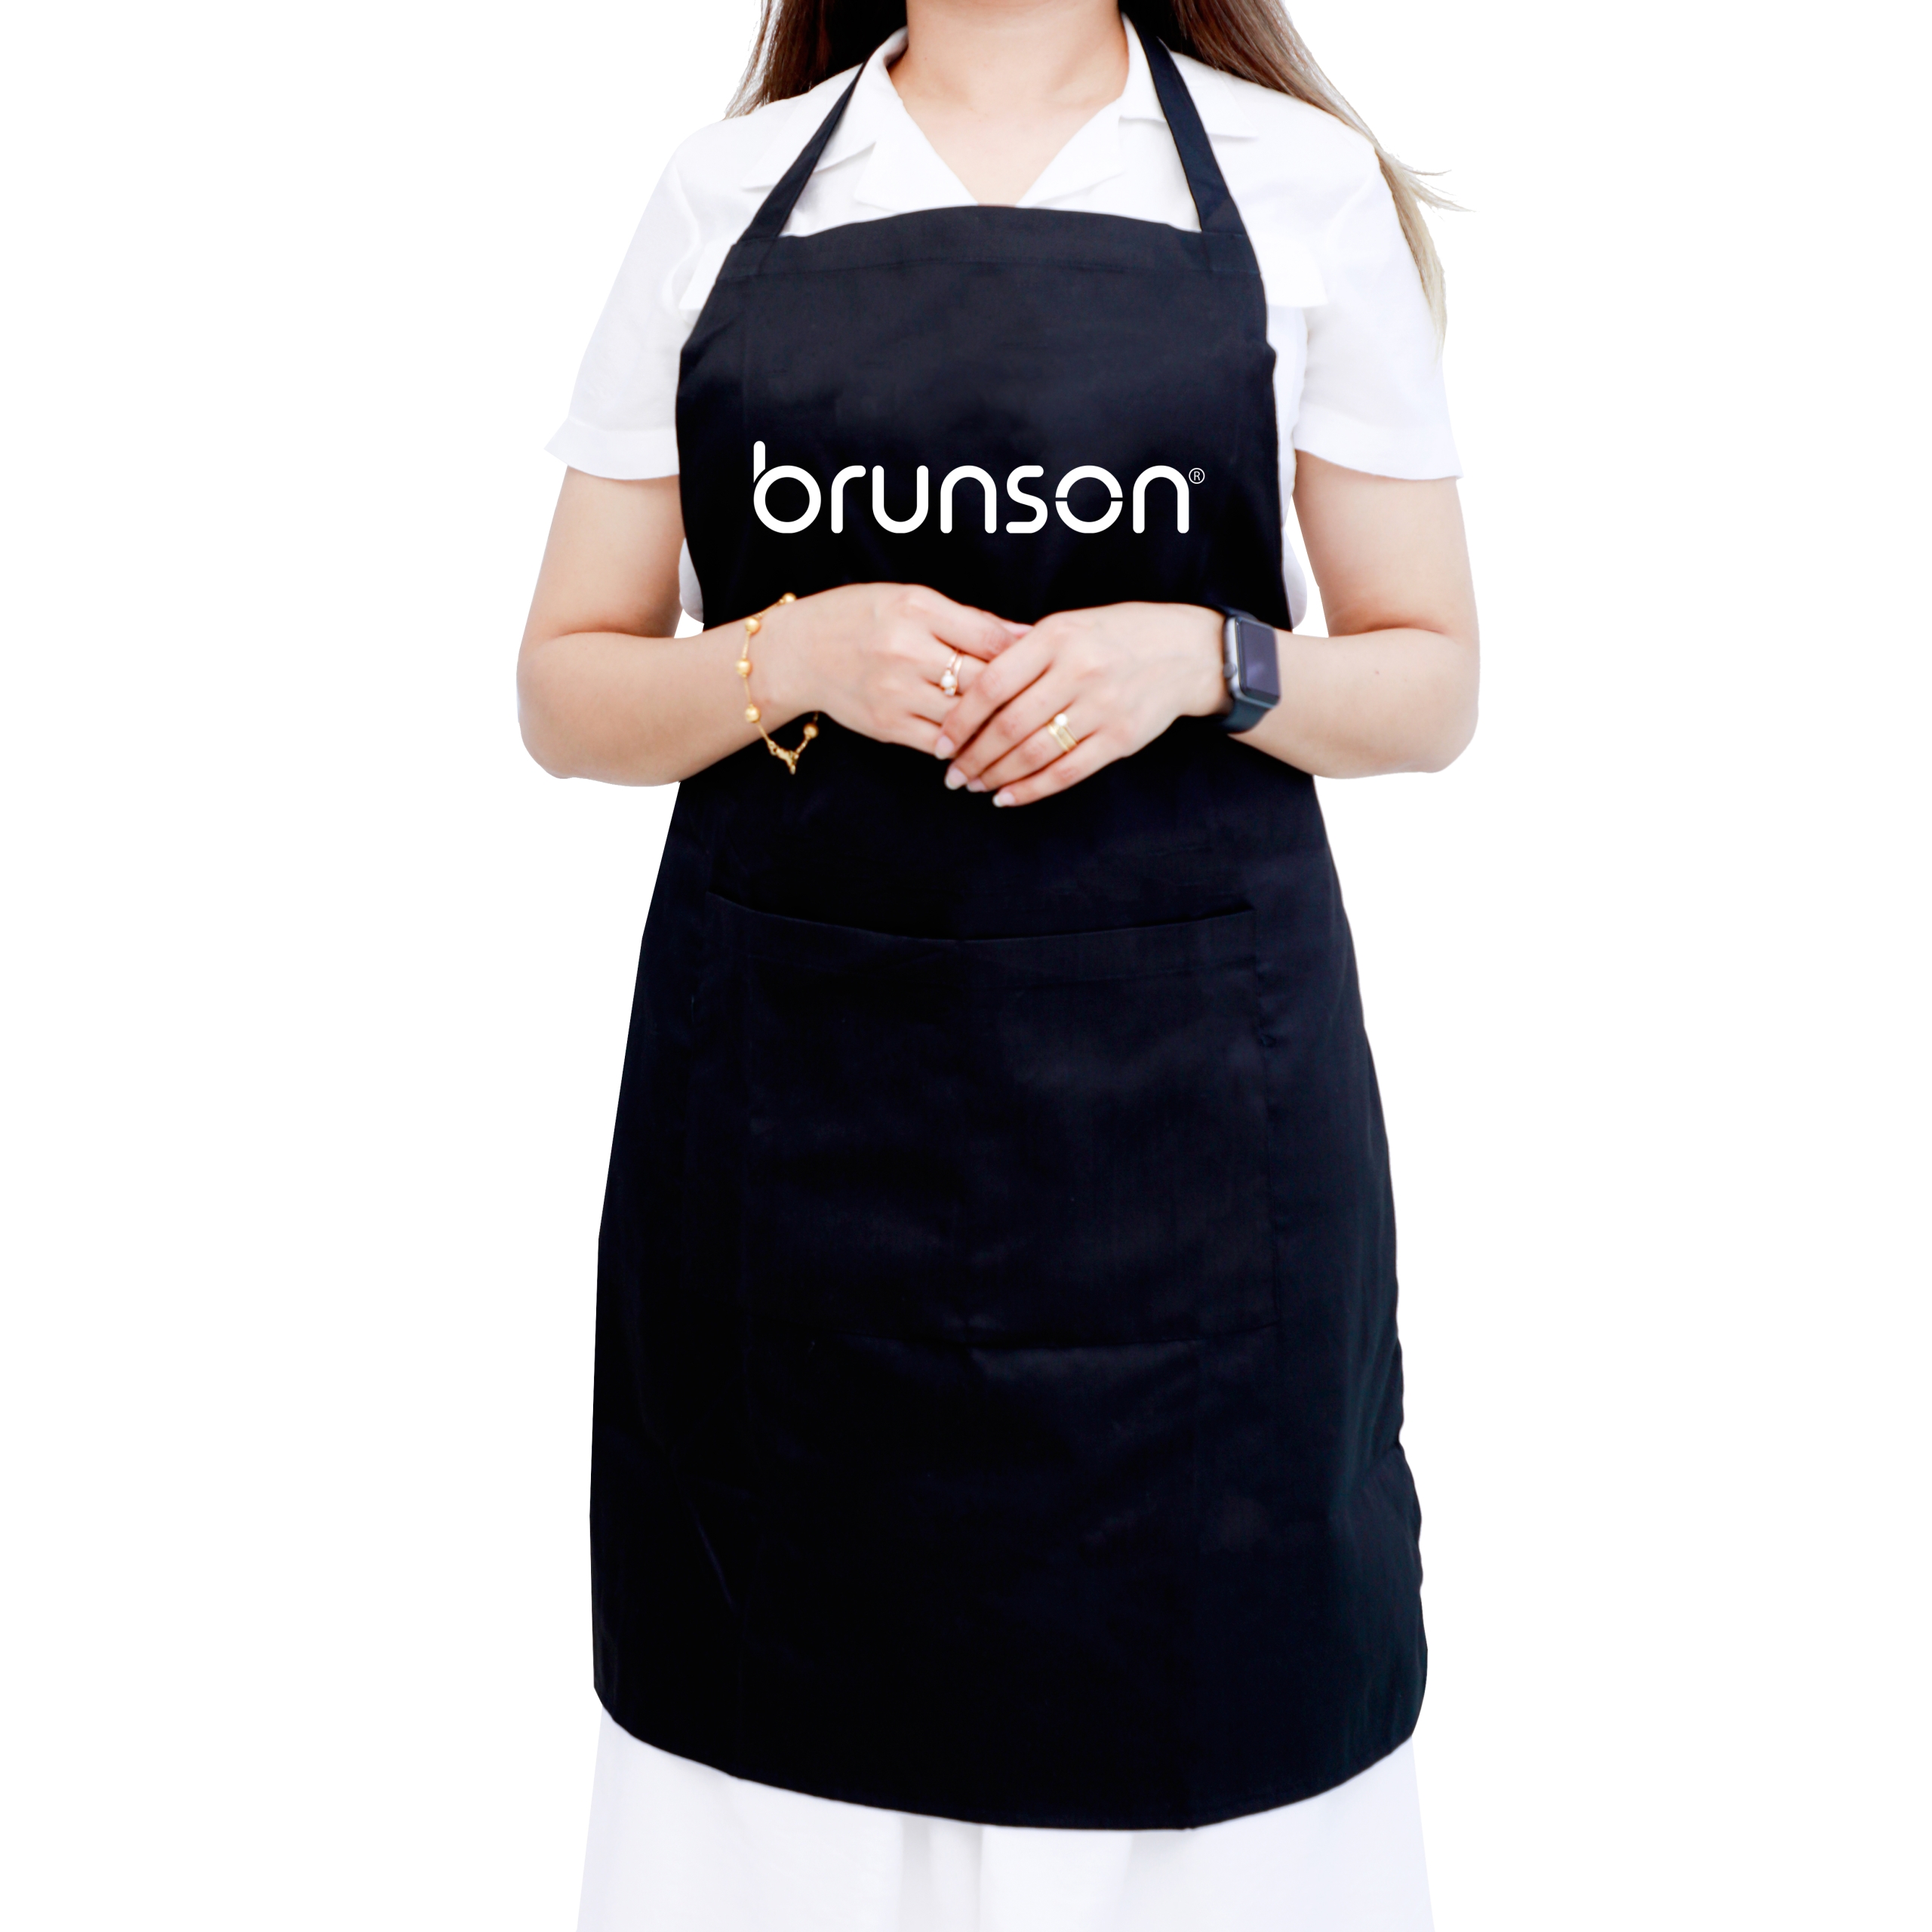 Professional-Apron-for-Beauty-Technicians-BA-04-BRUNSON